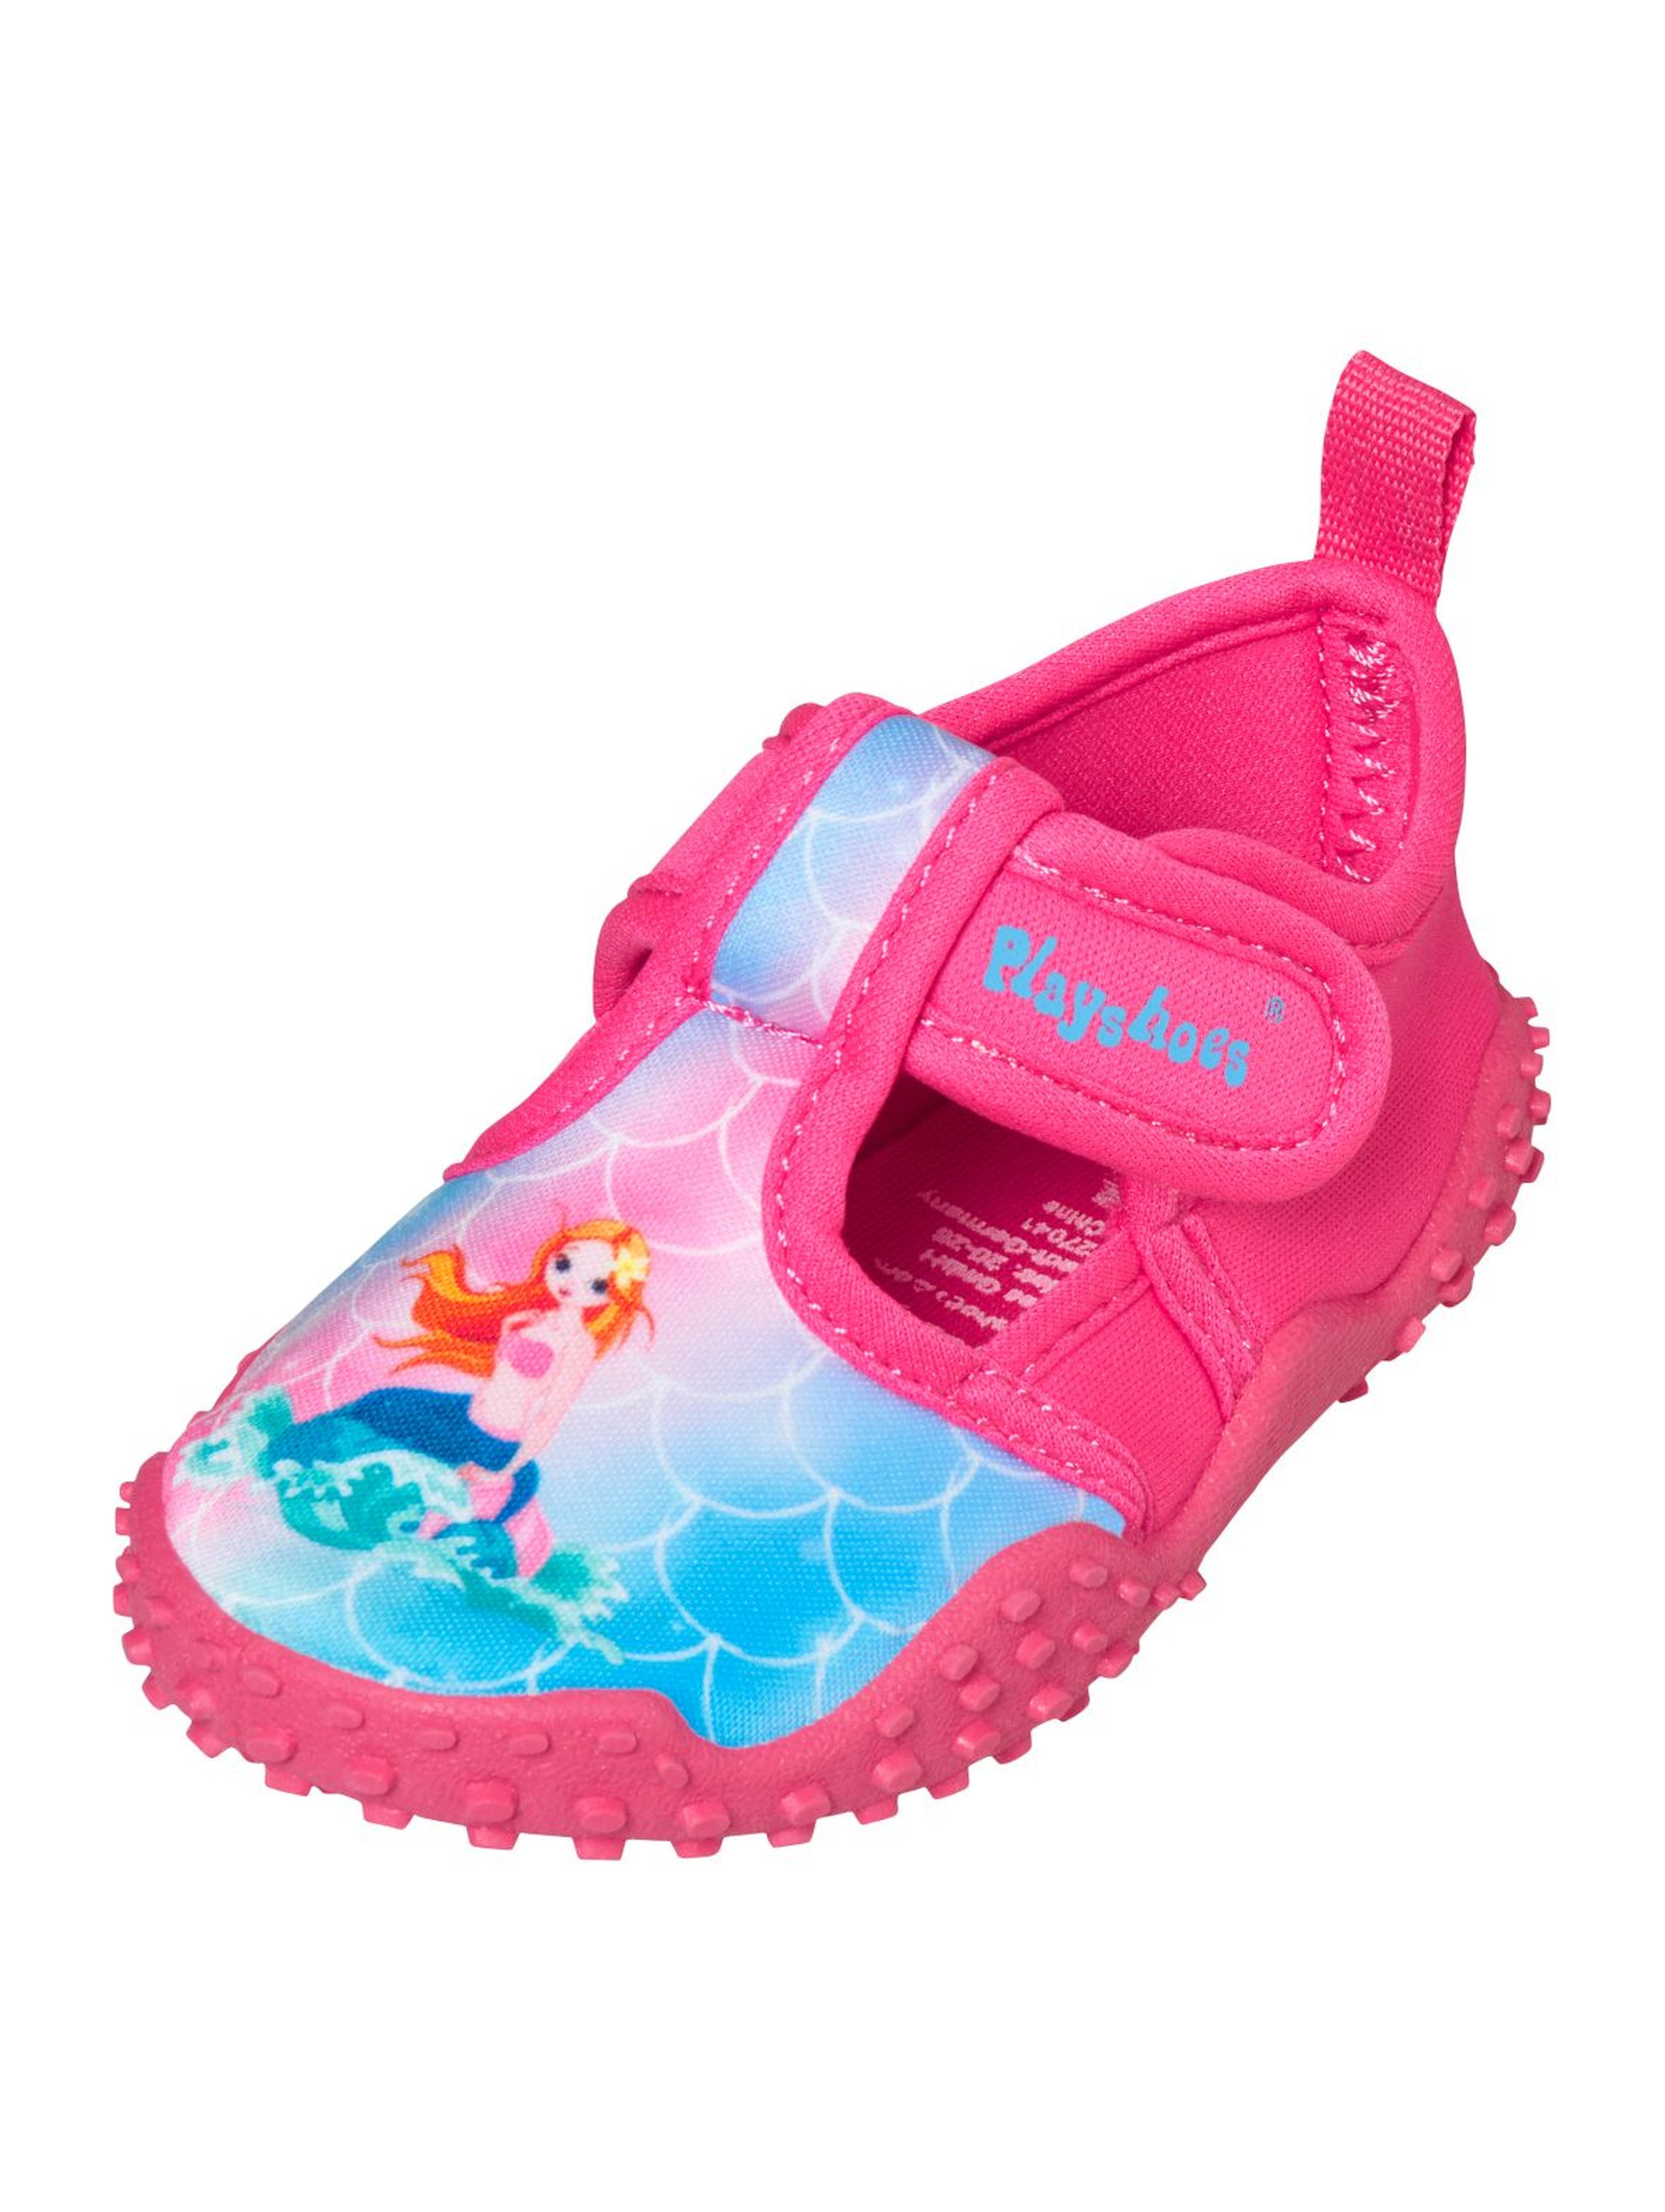 Buty kąpielowe z filtrem UV różowe - Syrenka